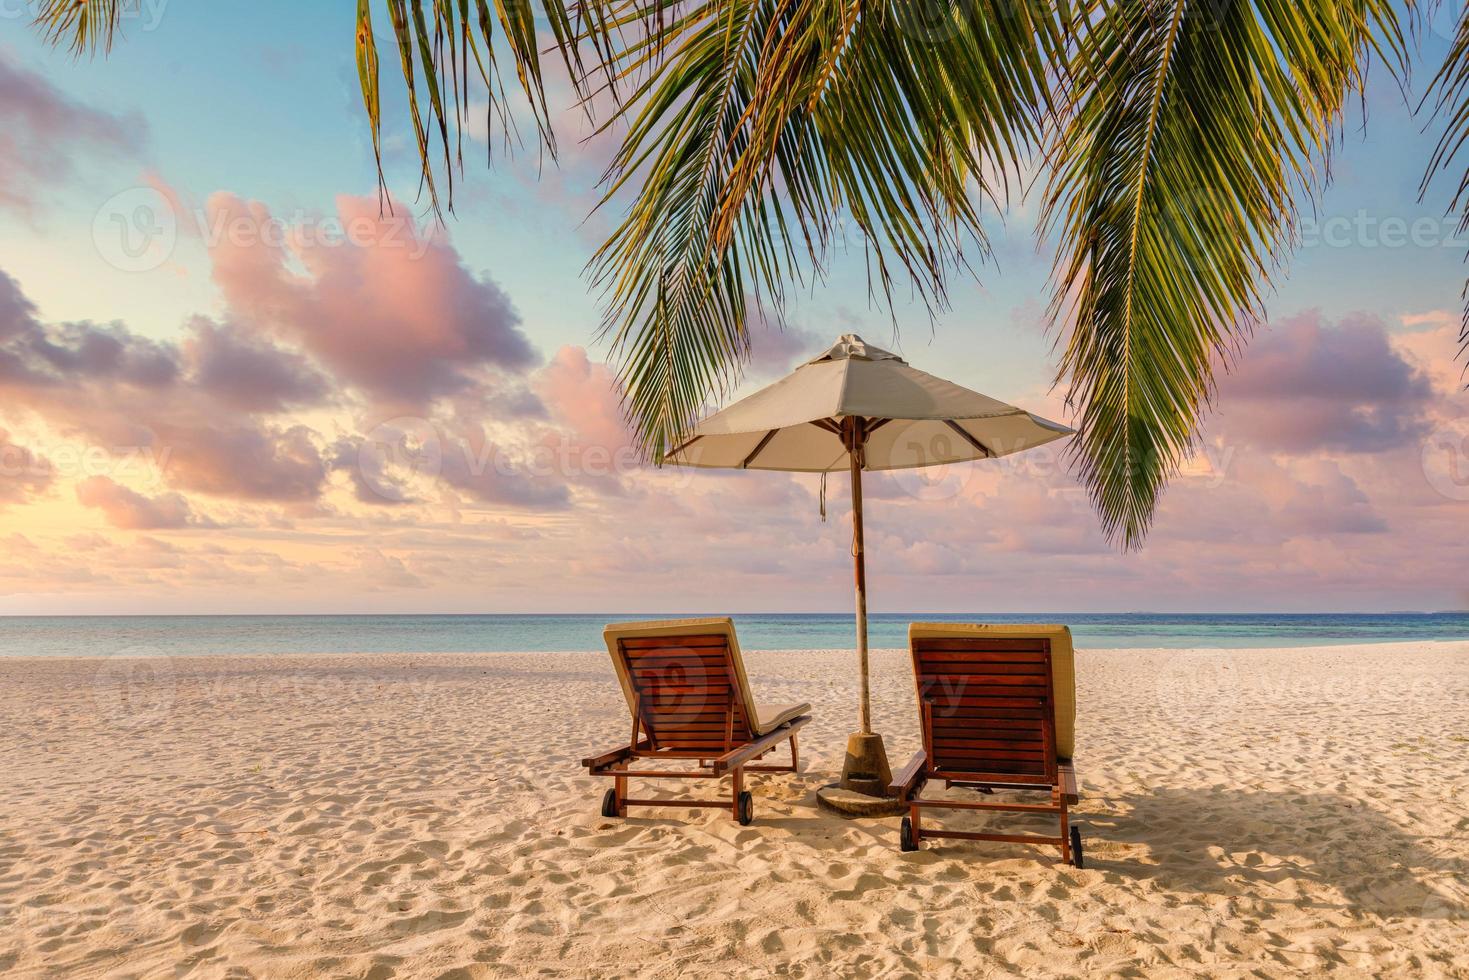 increíble puesta de sol en la playa. sombrilla de sillas de pareja romántica. tranquilidad unión amor concepto paisaje, playa relax, hermoso diseño paisajístico. escapada a la costa de la isla tropical, hojas de palma, idílica vista al mar foto